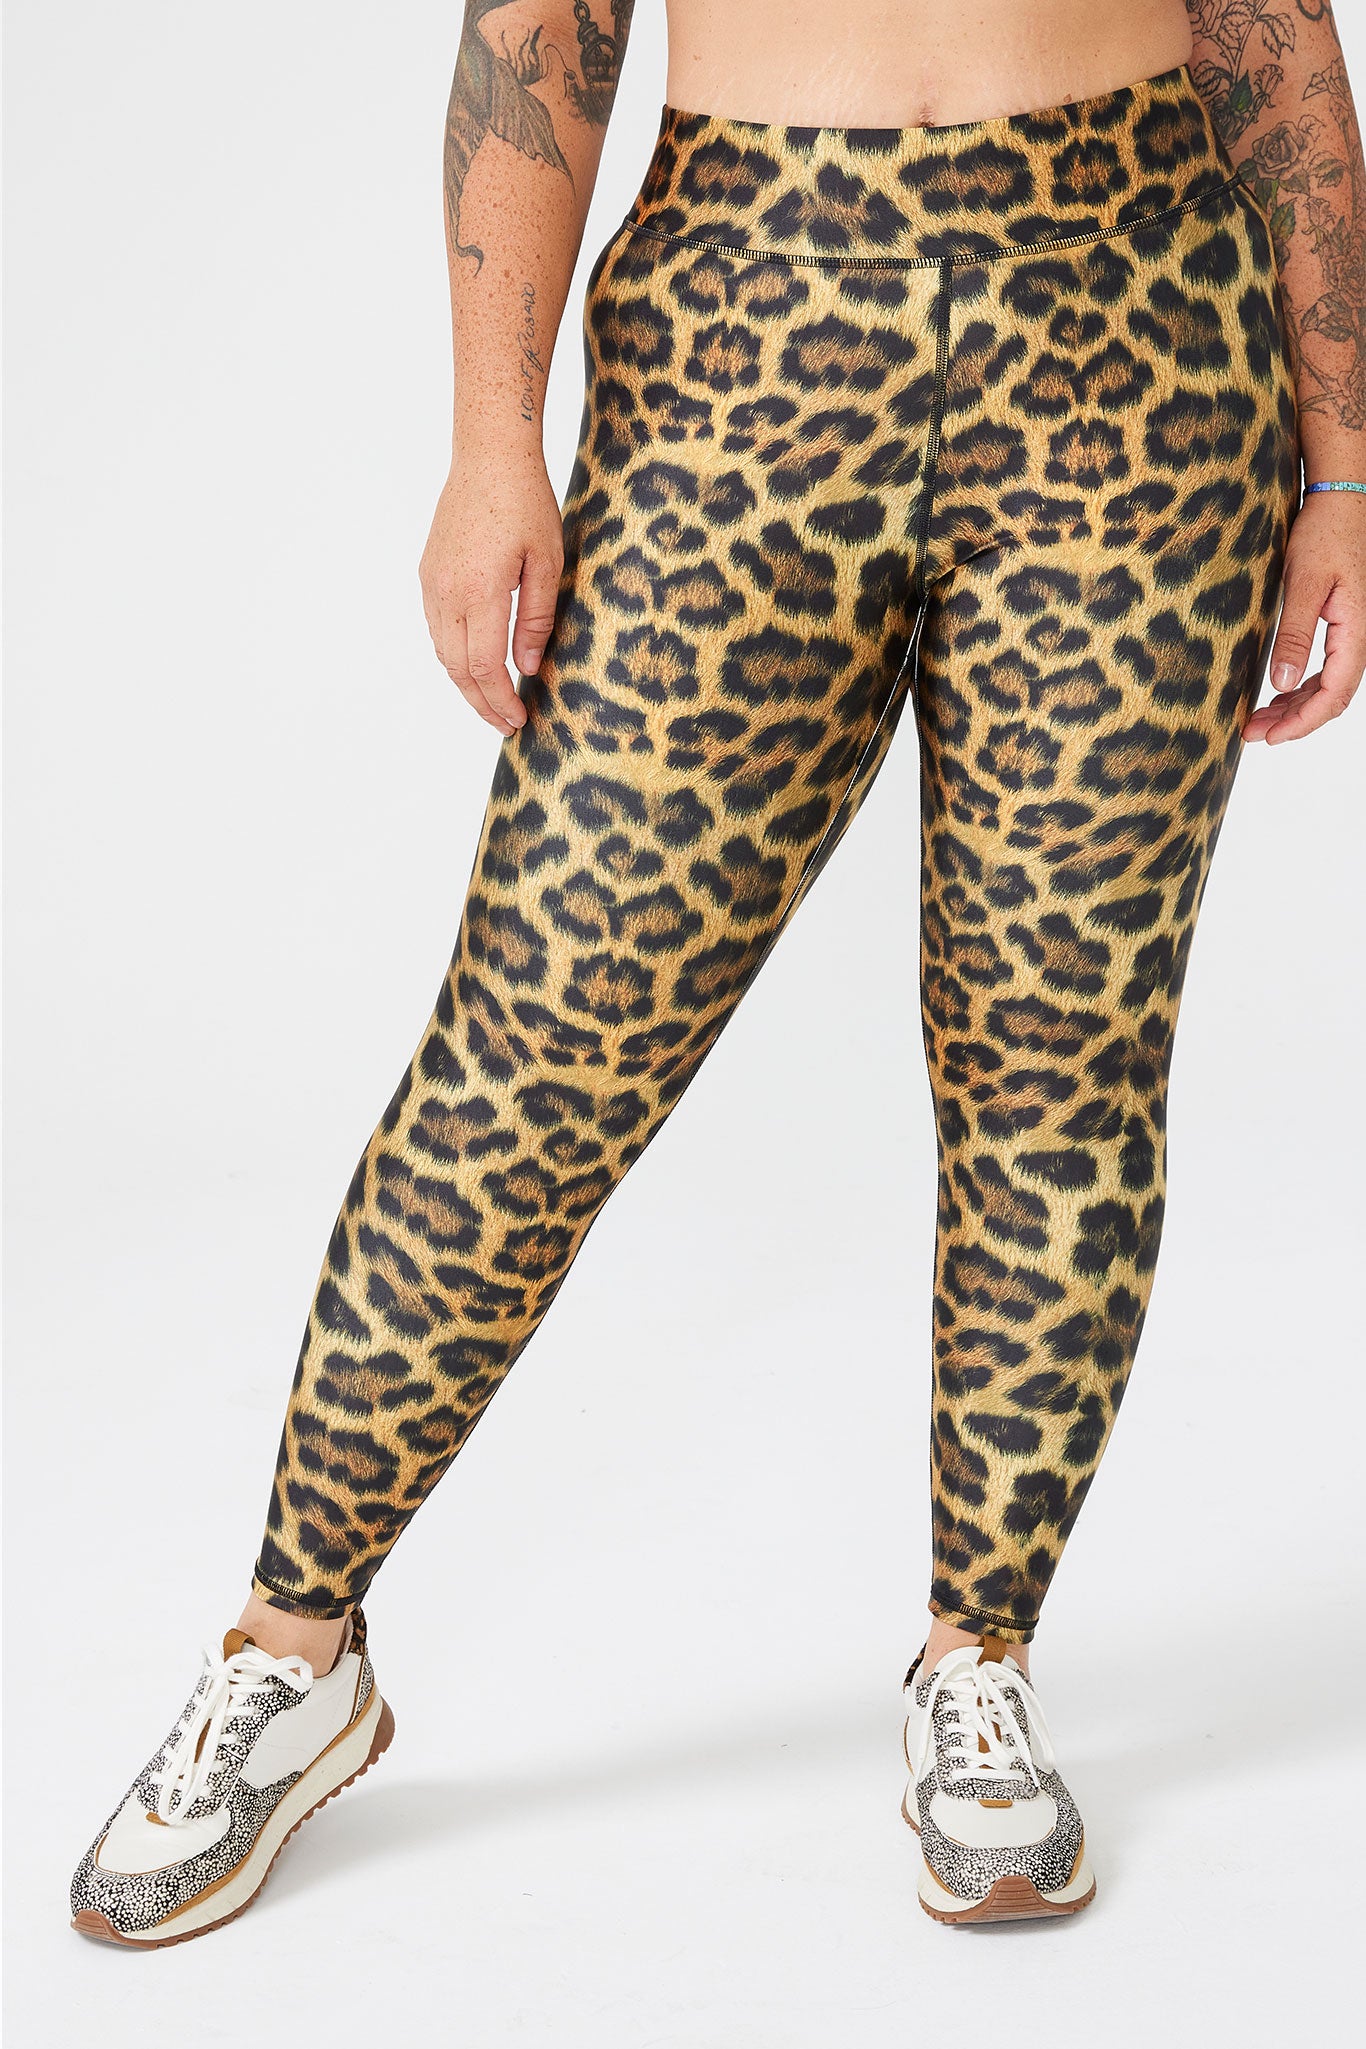 Z by Zelle Womens Capri Leggings Cheetah Animal Print Gray Size